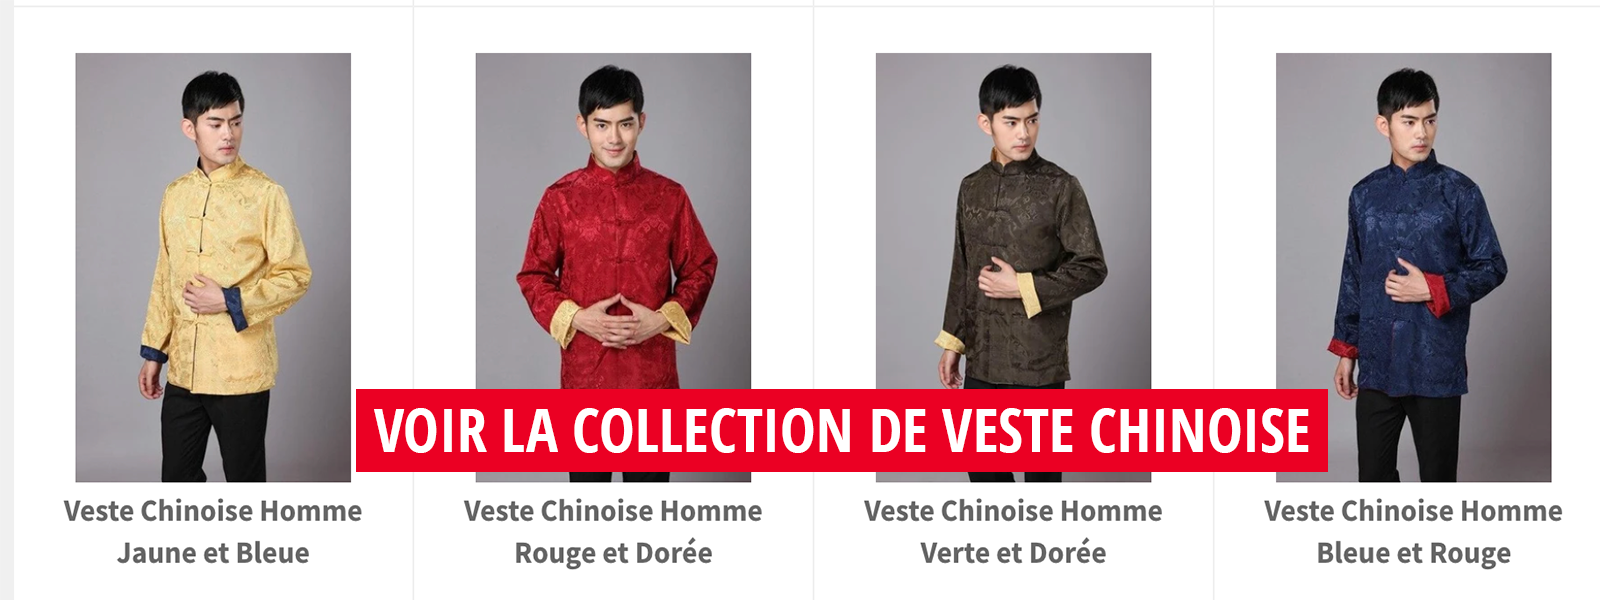 Collection de veste chinoise